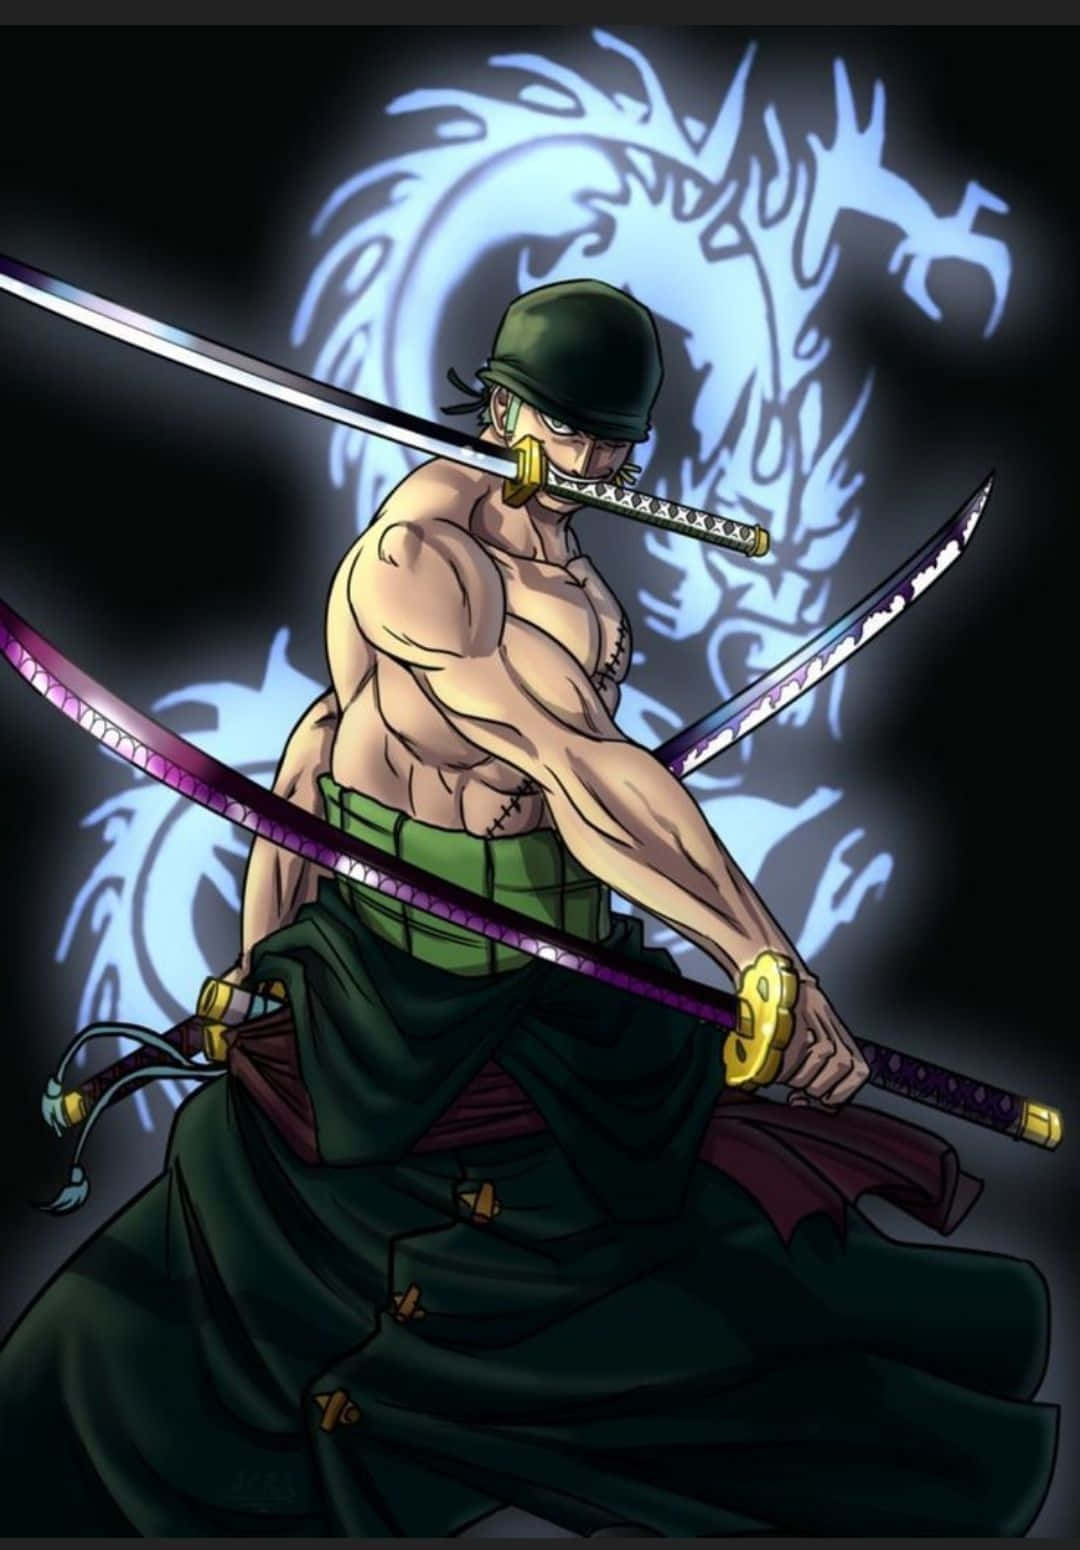 Zoro - One of the Greatest Swordsman